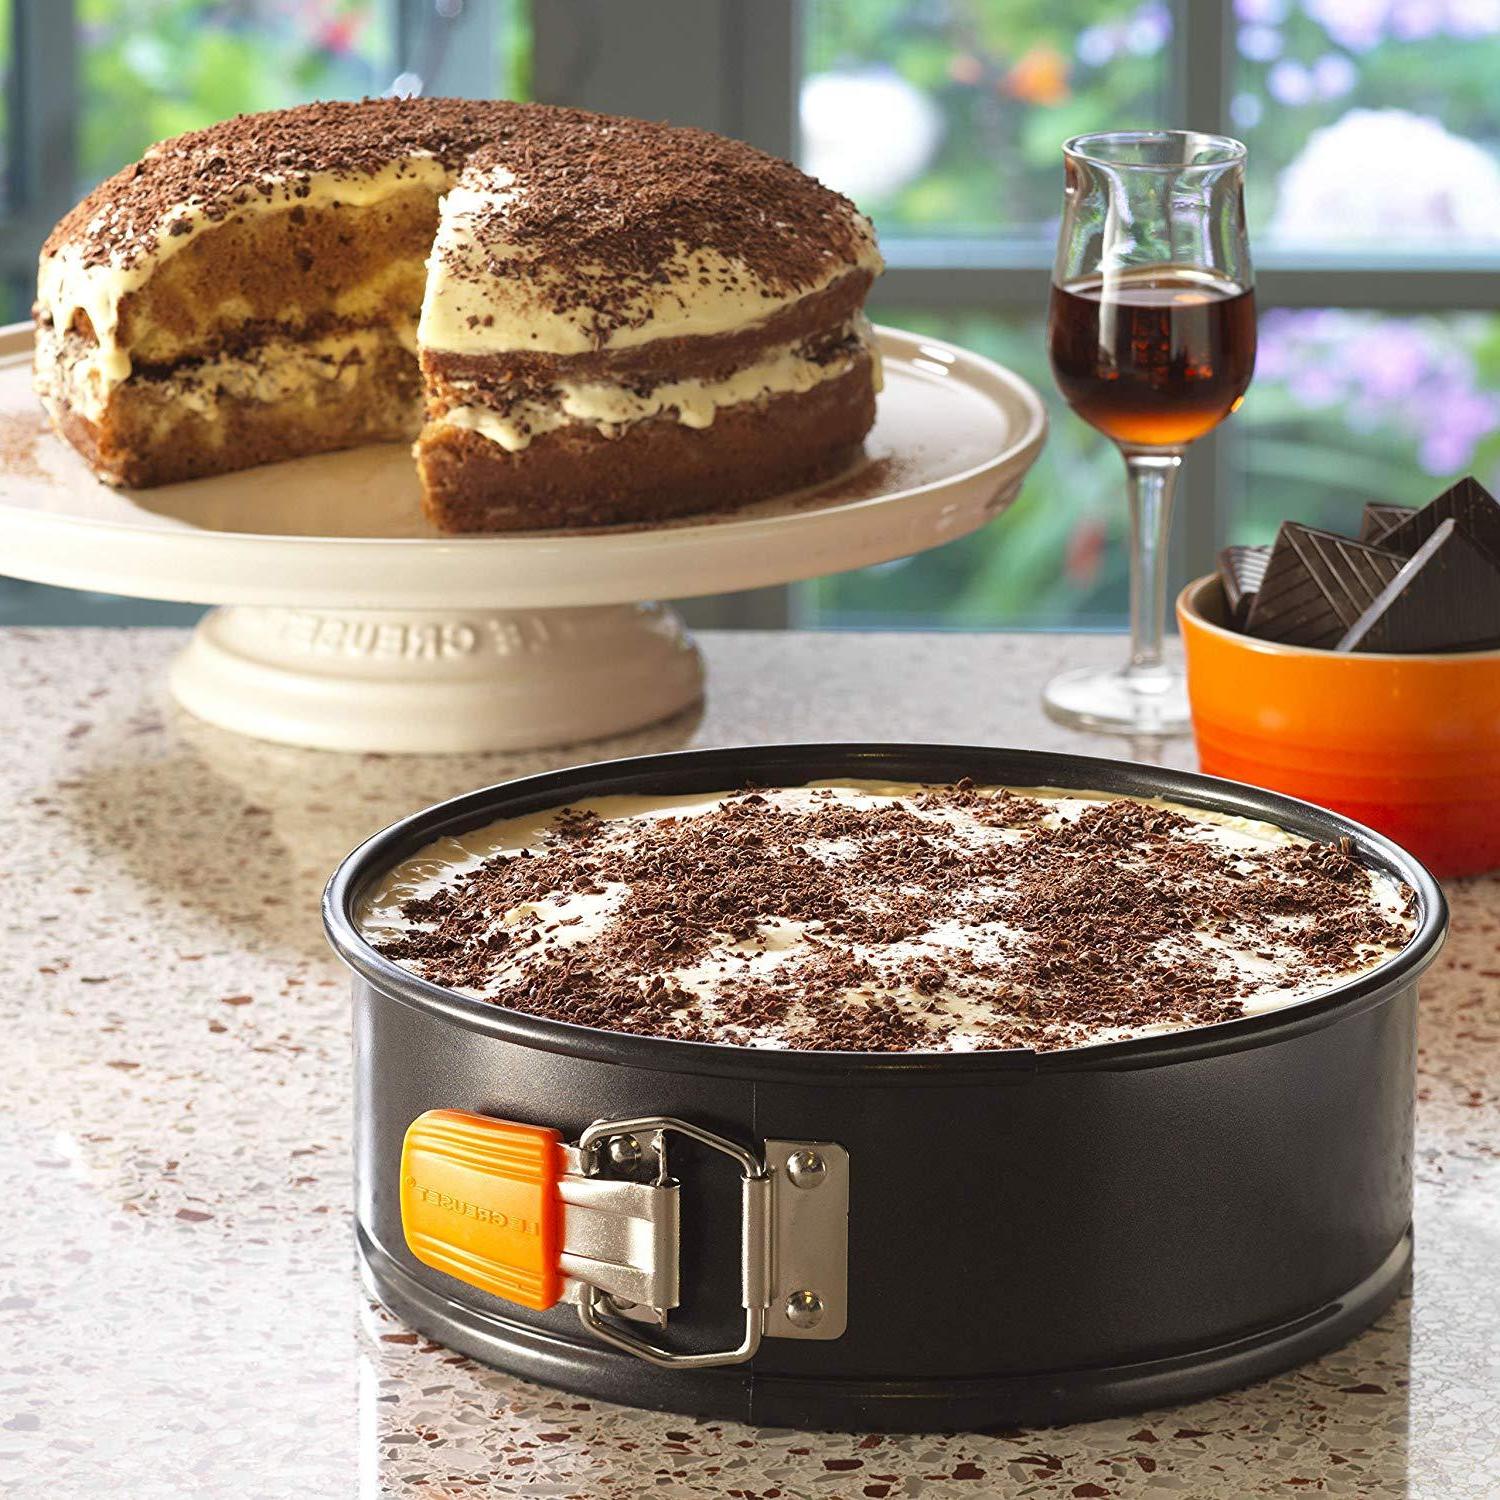 Kuchenform Set ist ein perfektes Geschenk für passionierte Bäcker!